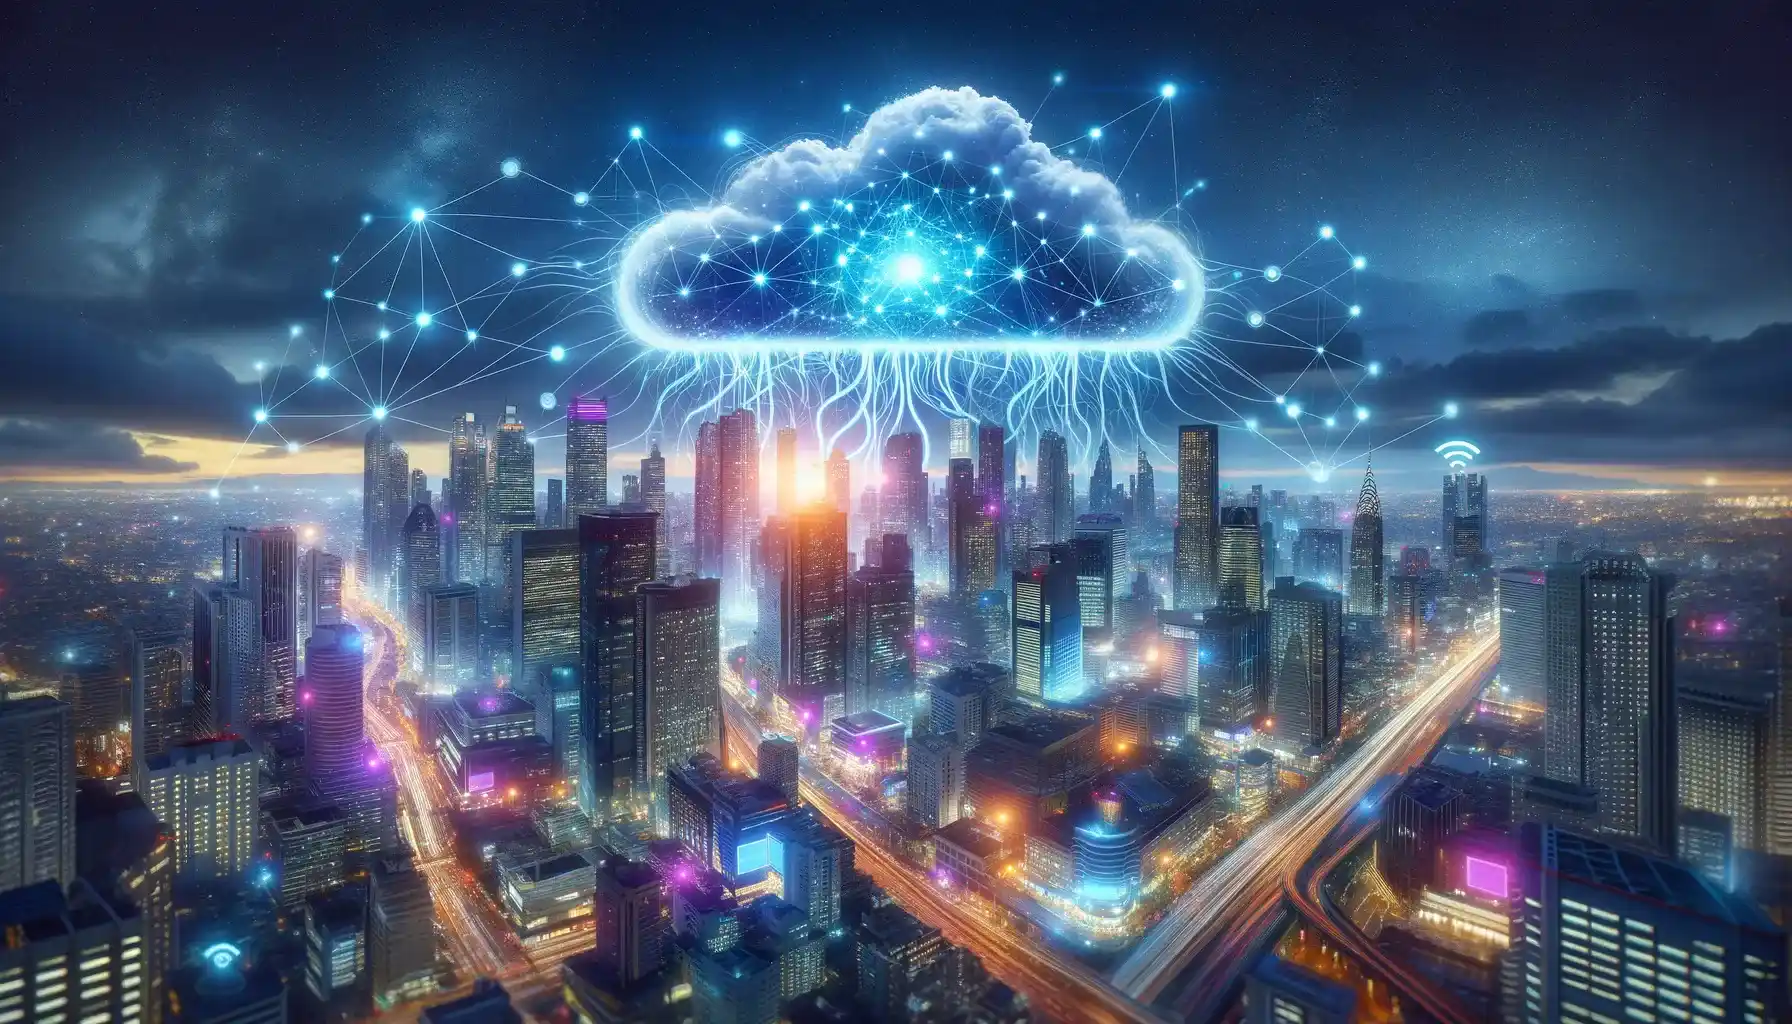 Cloud AI Market